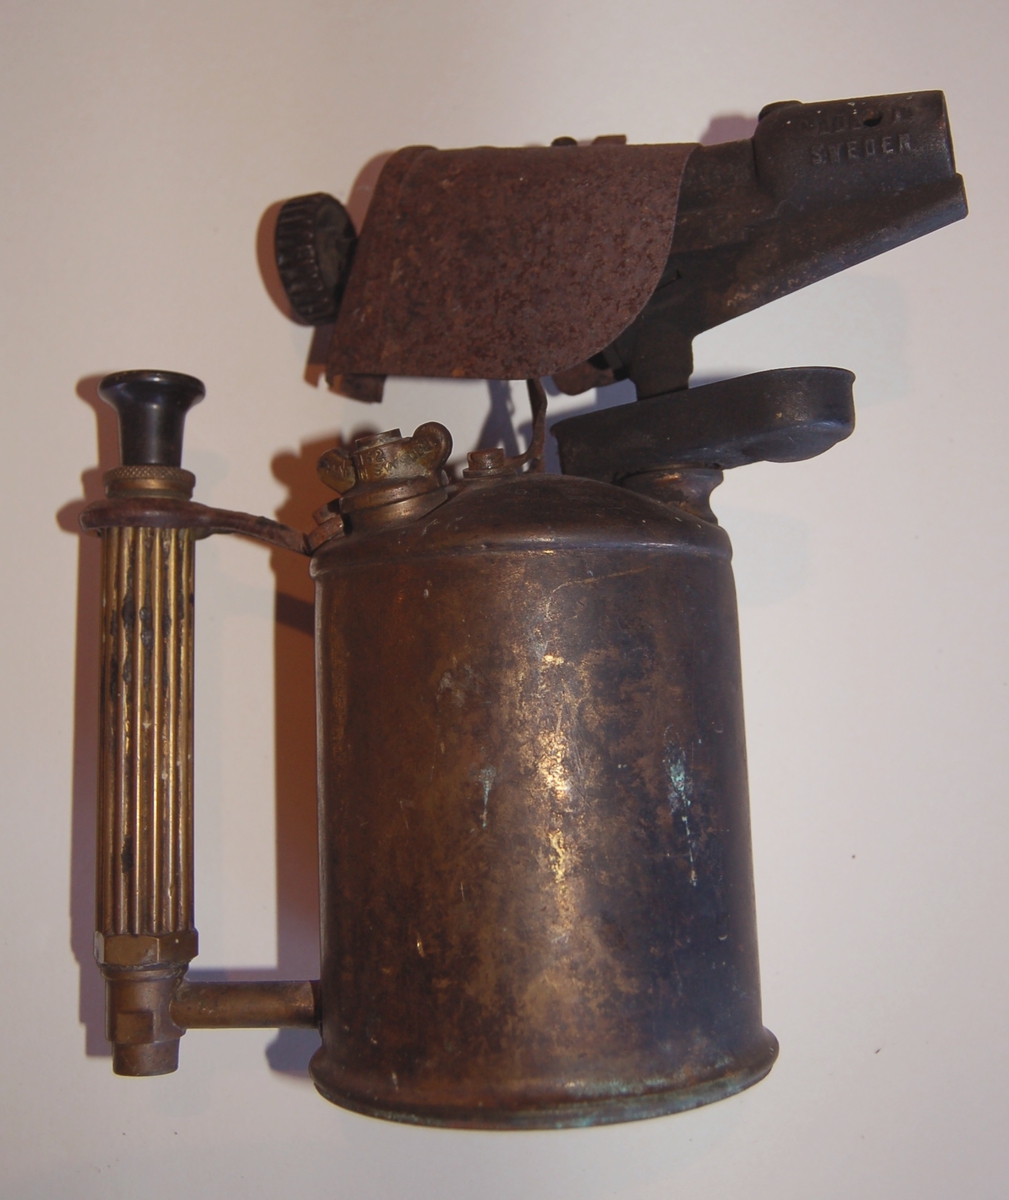 Blåselampen har form av en "Kanne/Mugge", der brenneren utgjer "tuten", og i handtaket er det innmontert en handpumpe for tilførsel av parafin til brenneren.